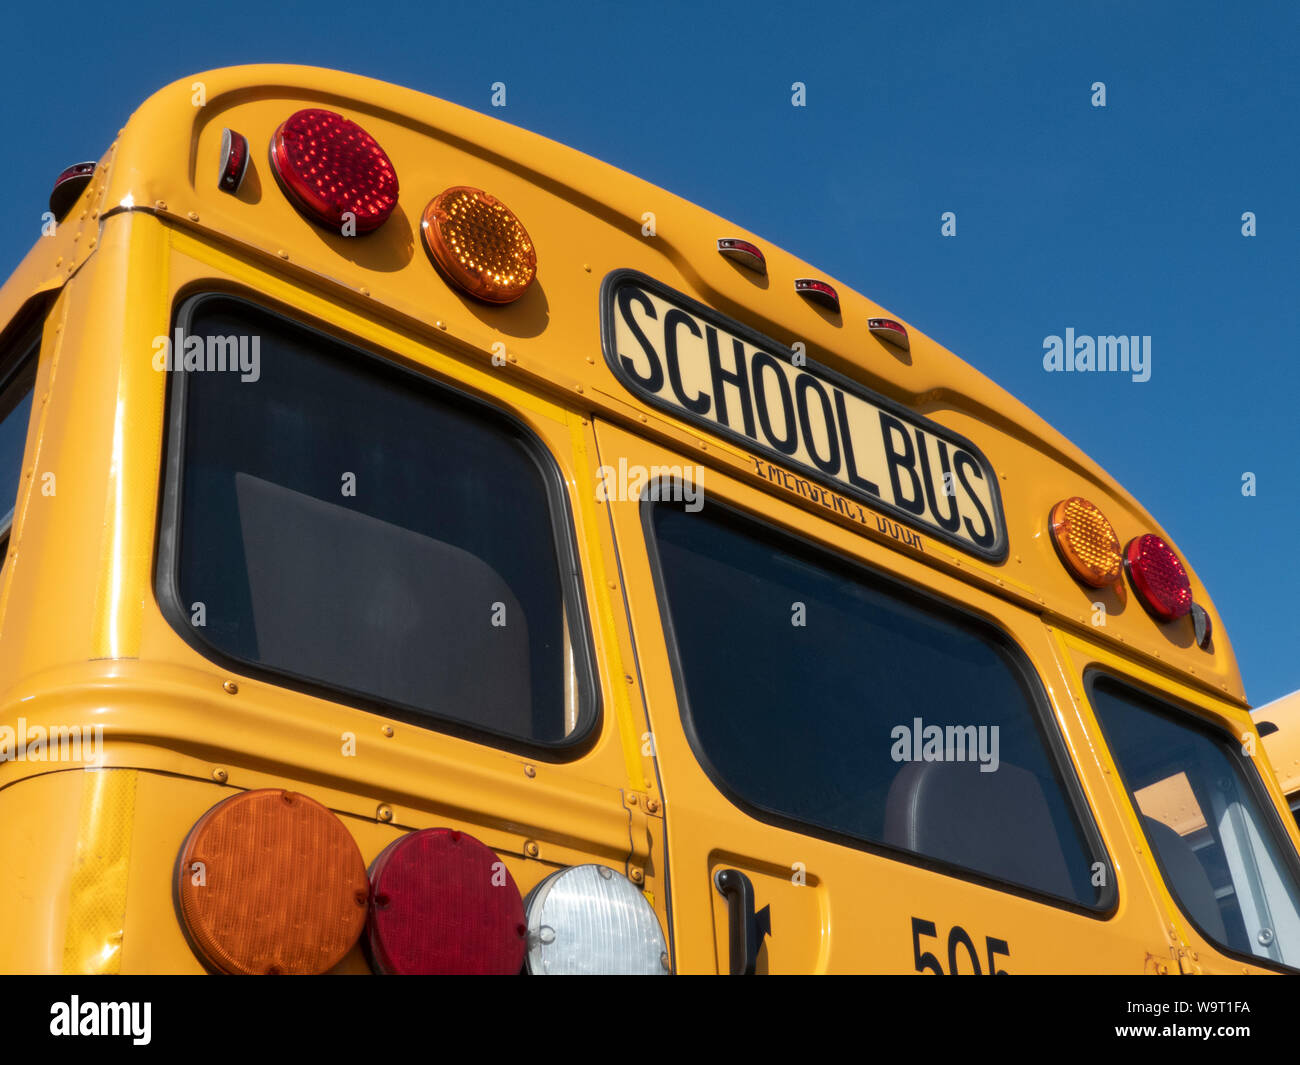 Les autobus scolaires garés sur le lot. Banque D'Images